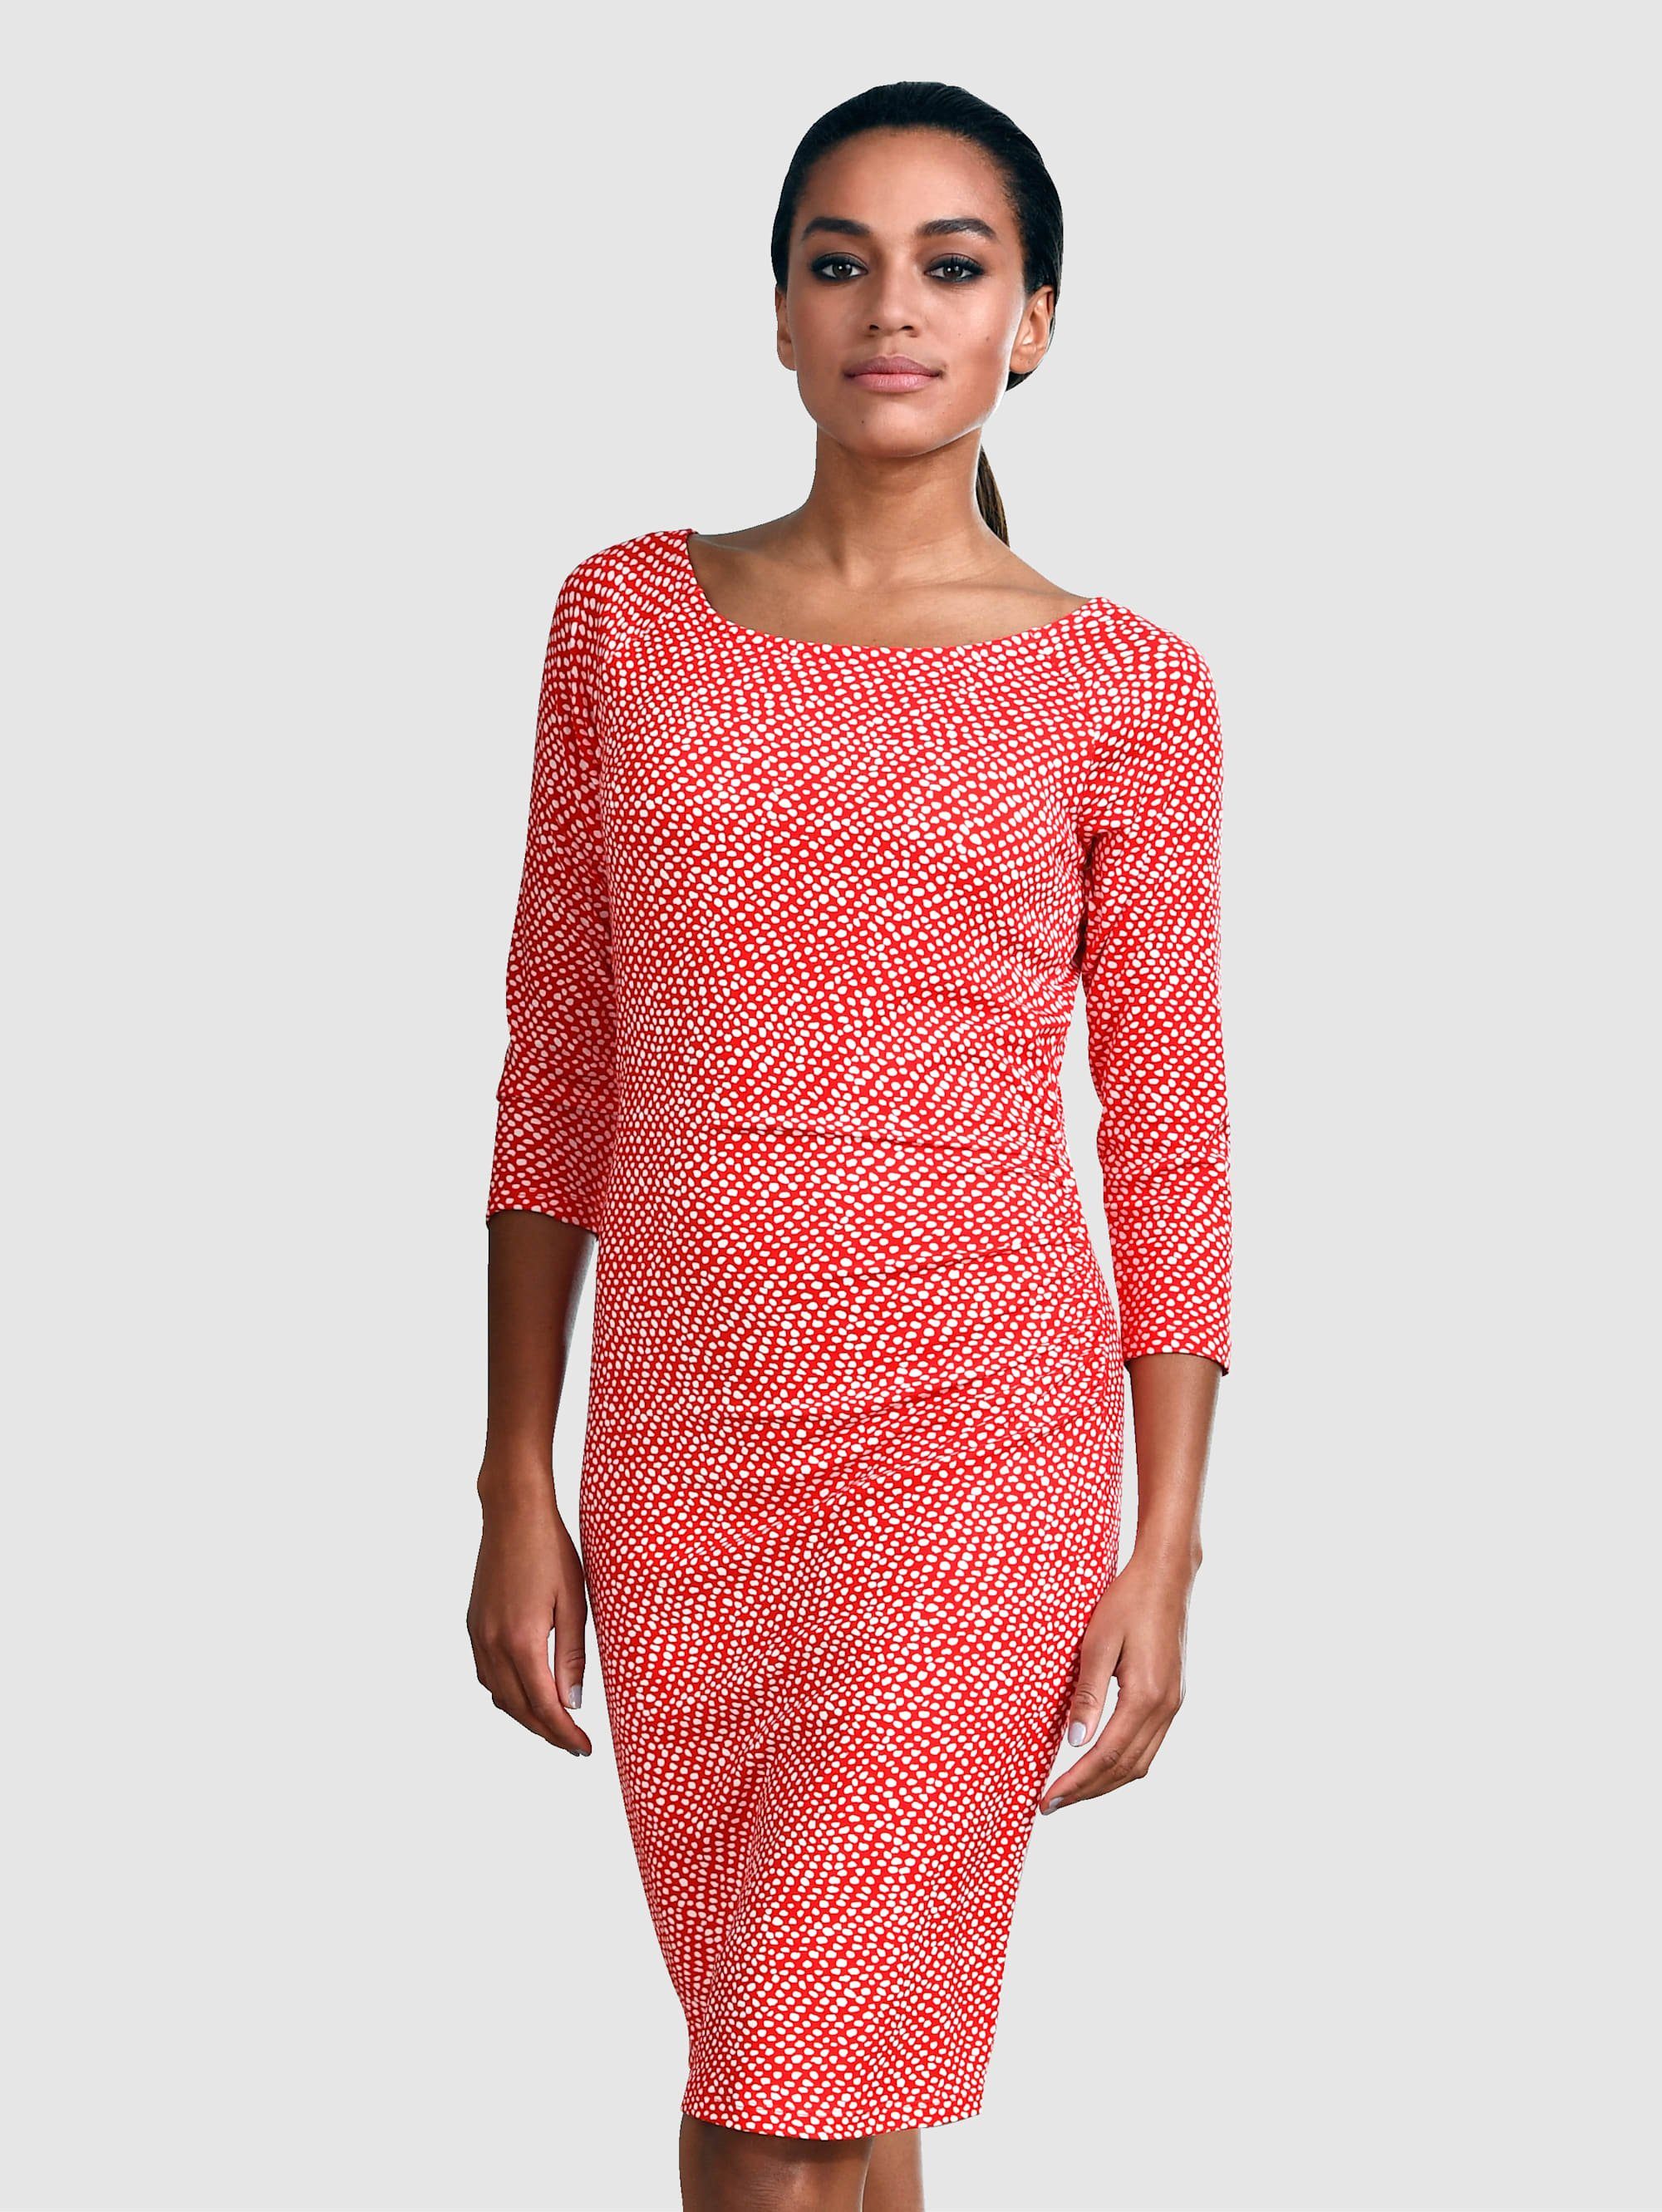 Alba Moda Kleid im Minimal Punkte Dessin, Druckkleid in schlanker  Silhouette online kaufen | OTTO